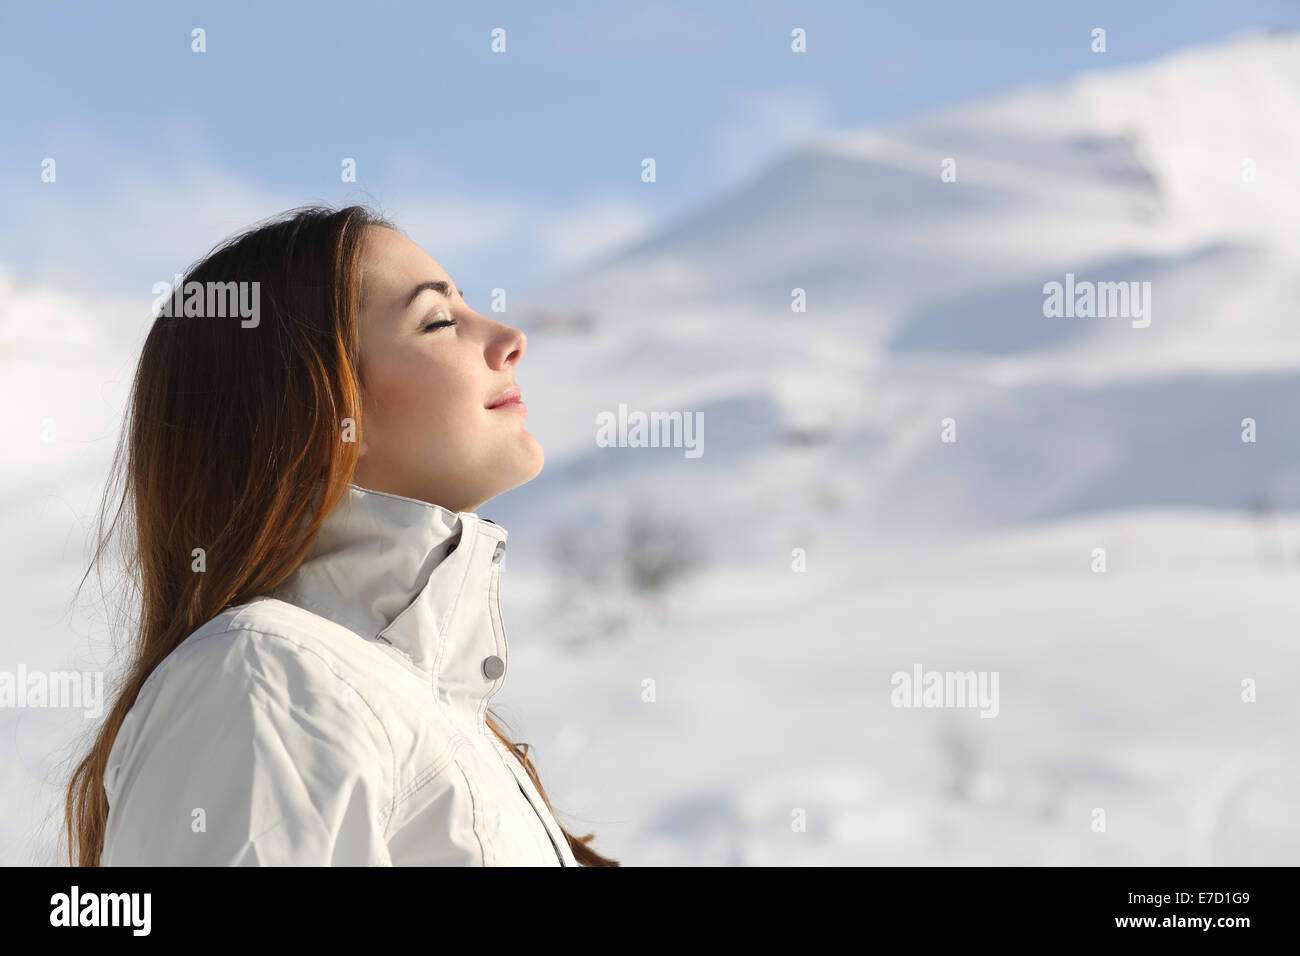 Profil d'une femme de l'explorateur de respirer l'air frais en hiver avec la montagne enneigée en arrière-plan Banque D'Images